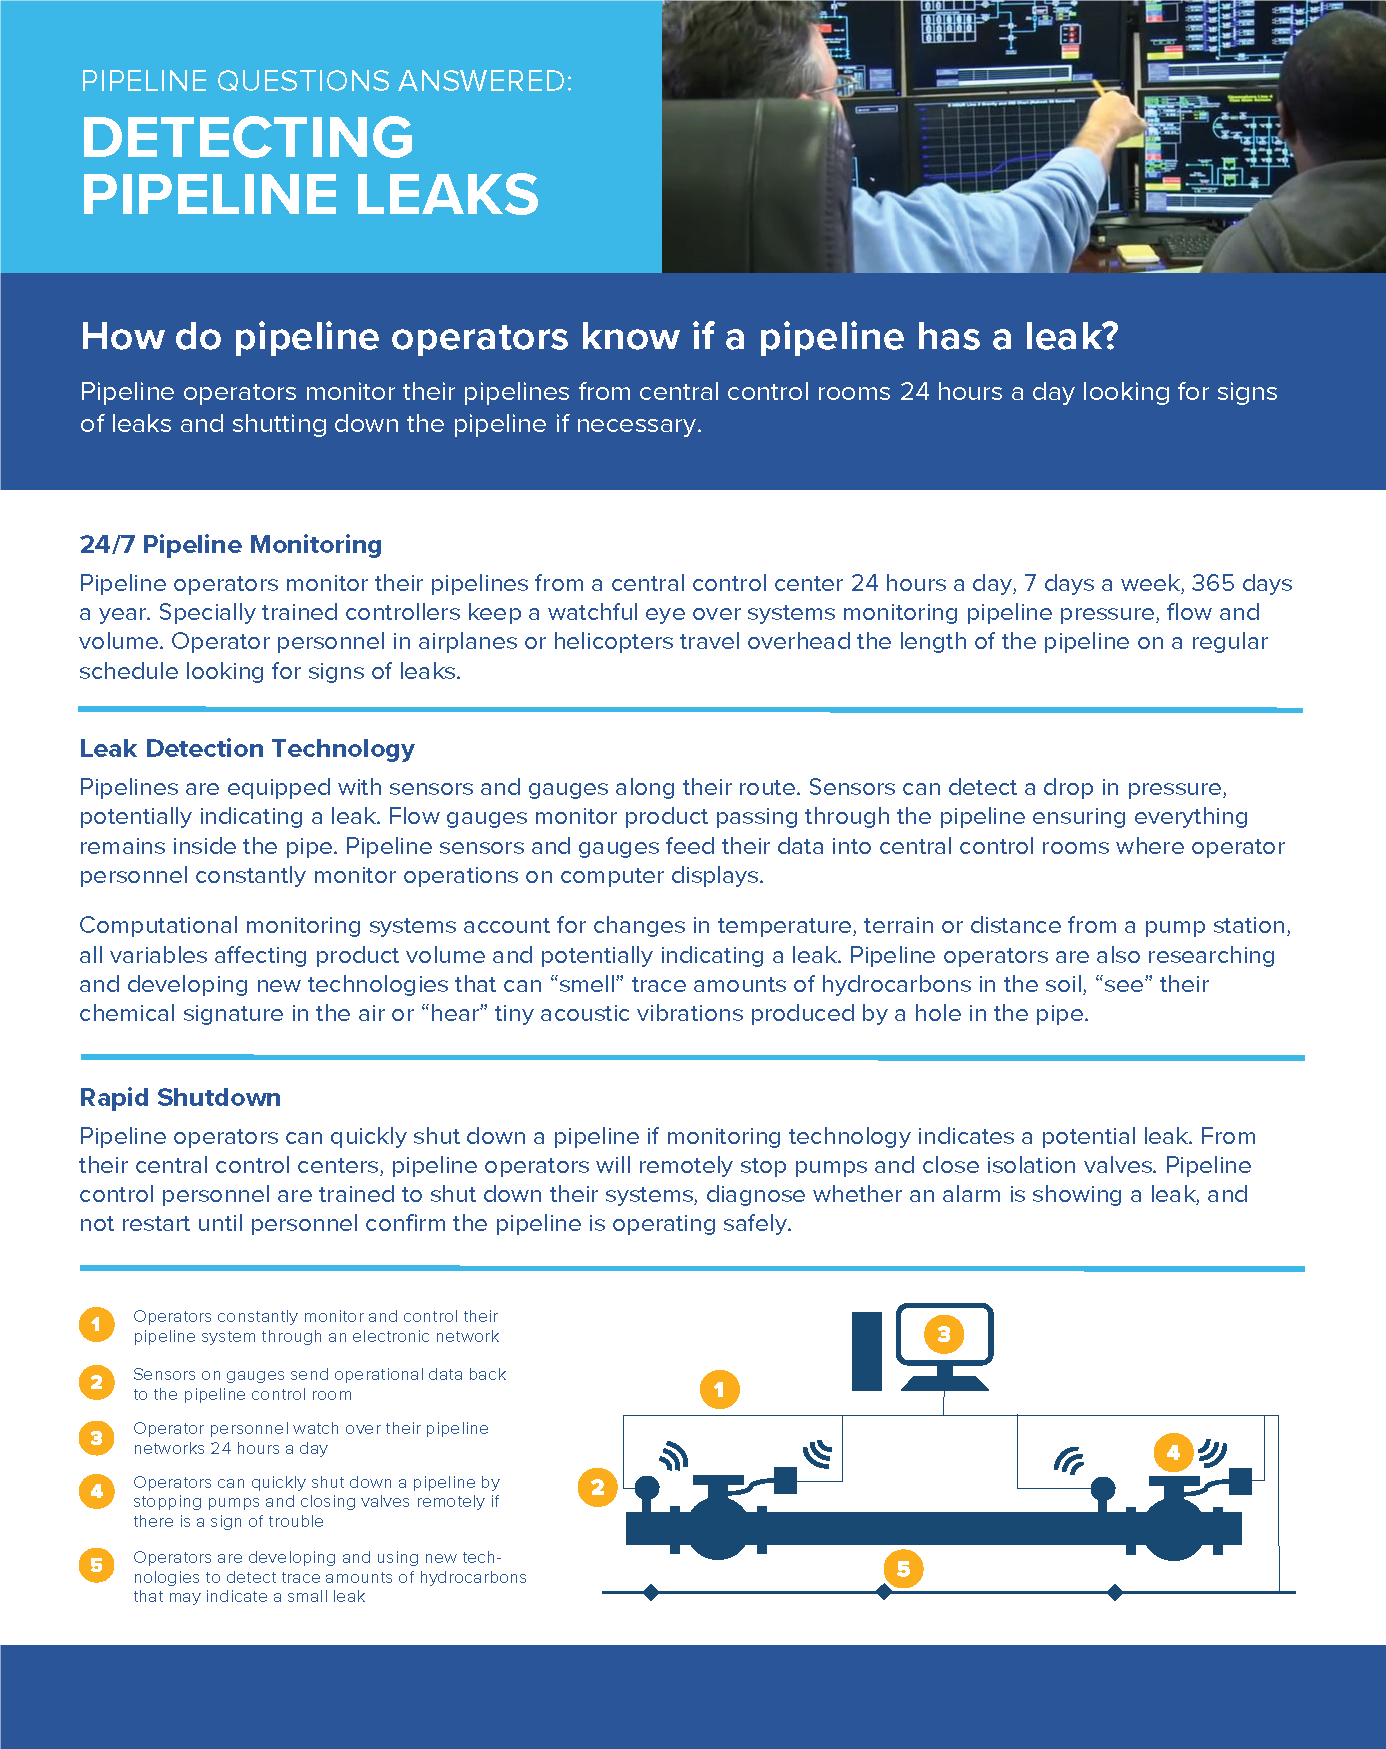 Detecting Pipeline Leaks